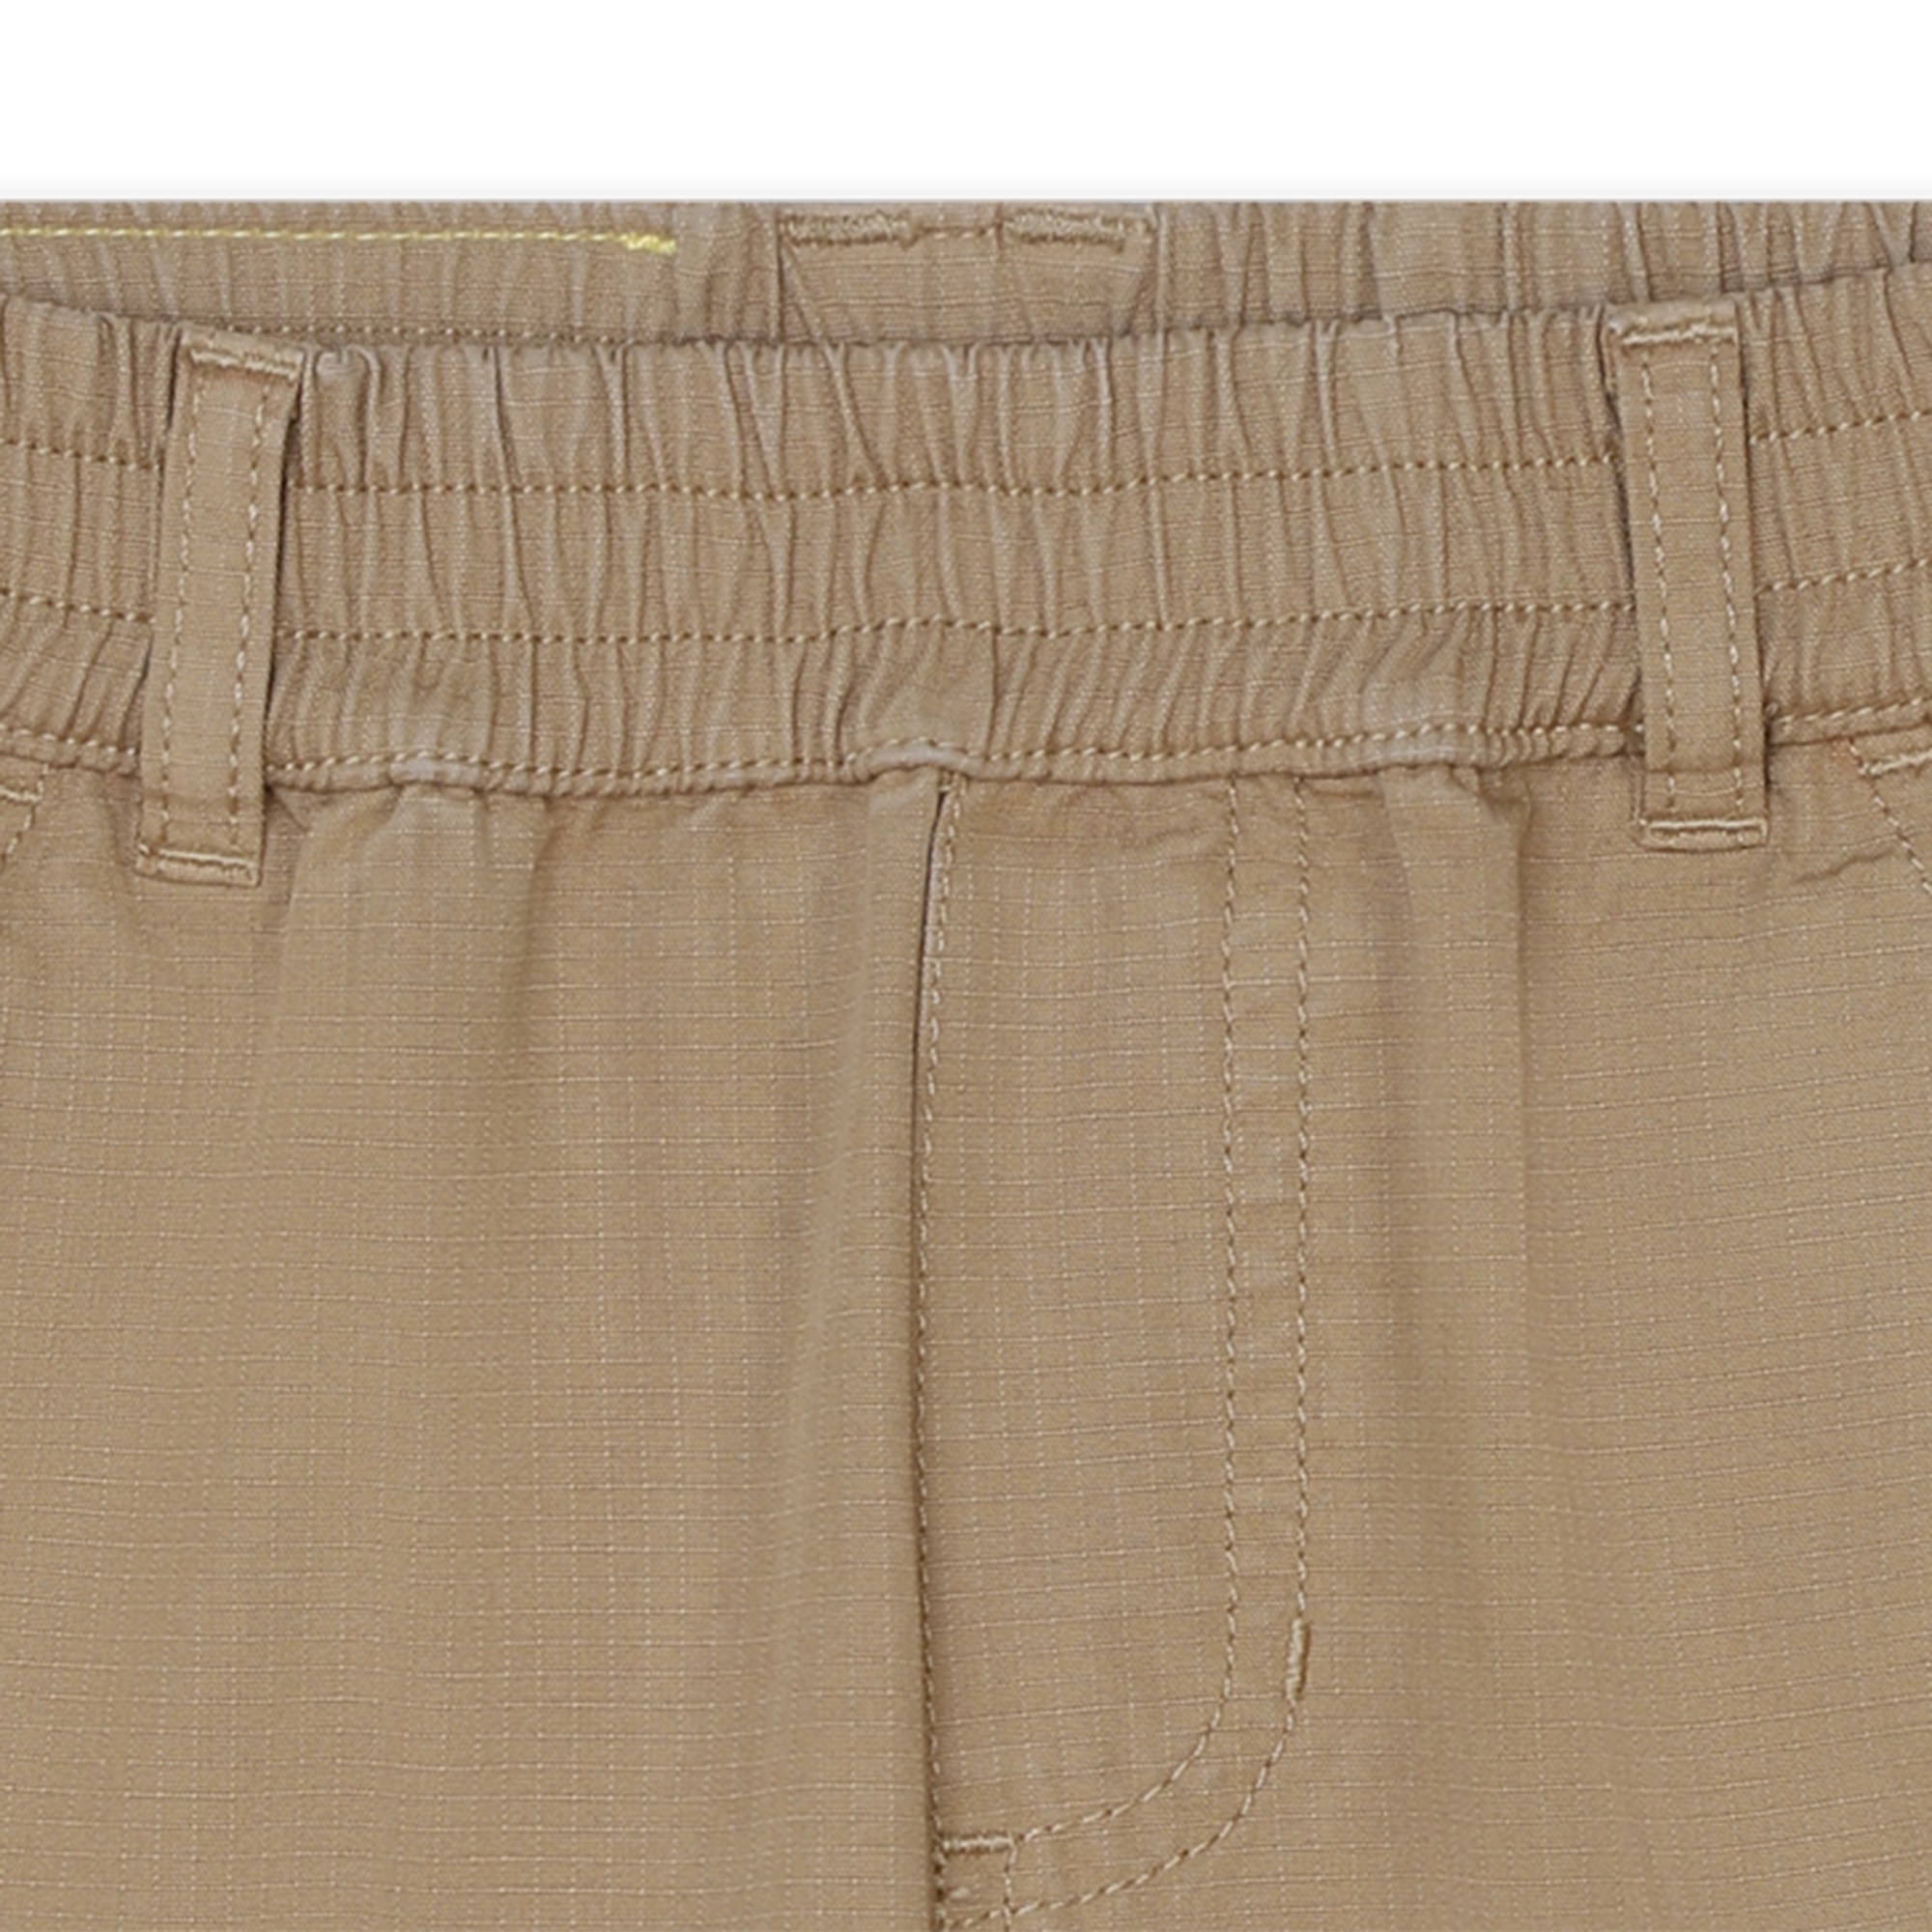 Bermuda-Shorts mit mehreren Taschen MARC JACOBS Für UNISEX